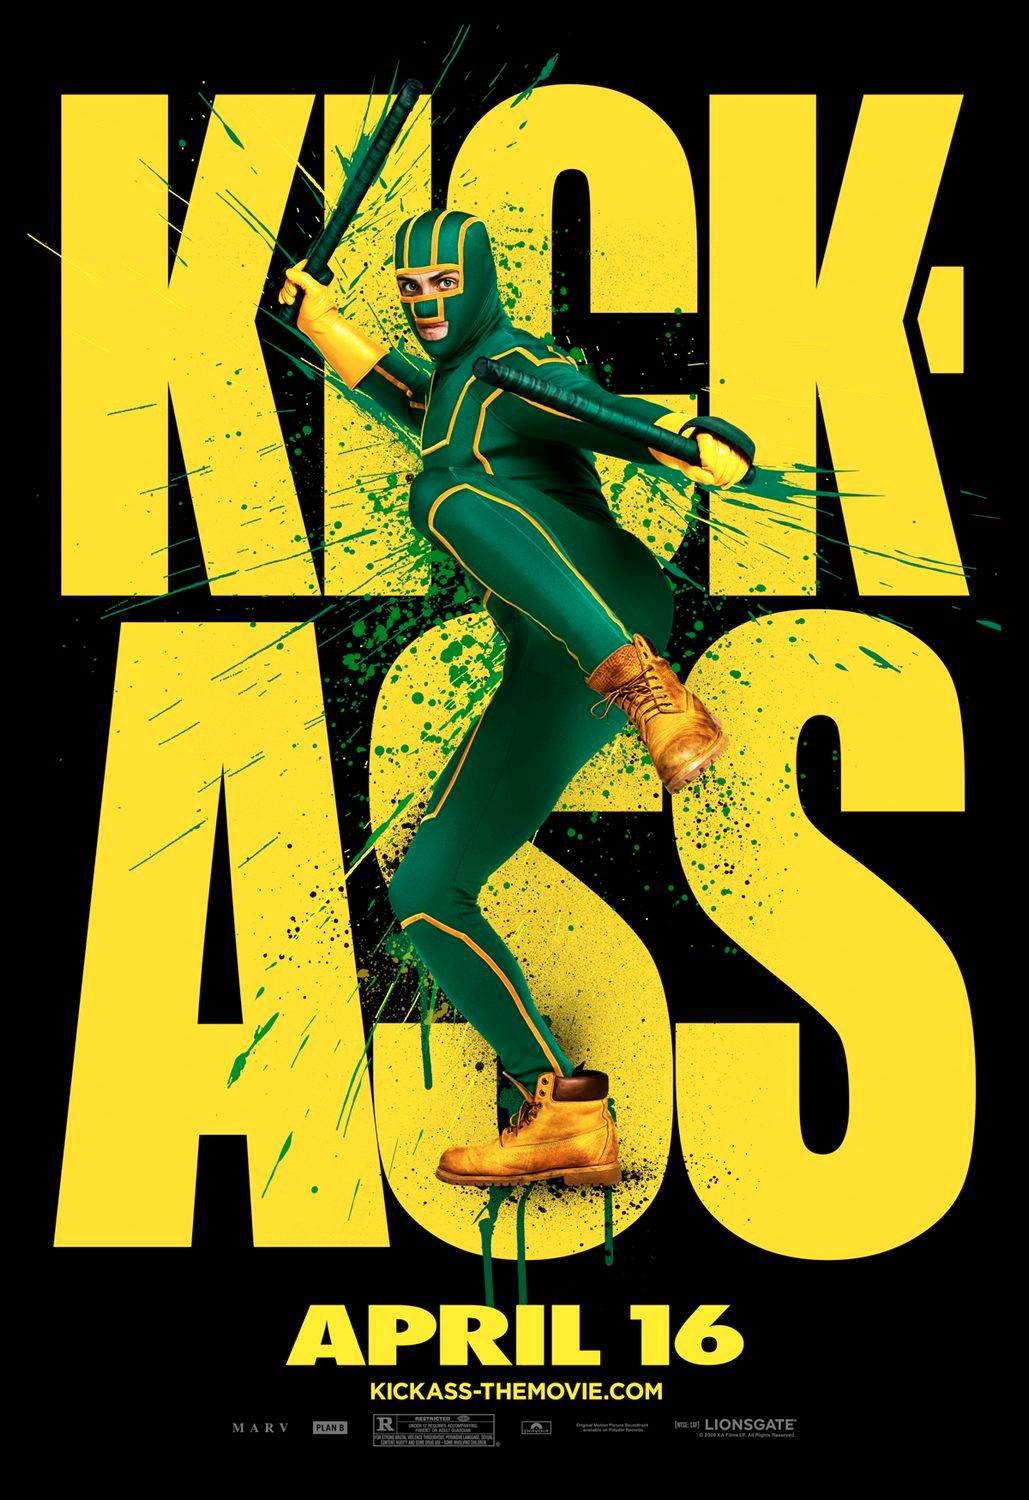 Kick-Ass Outdoor Poster